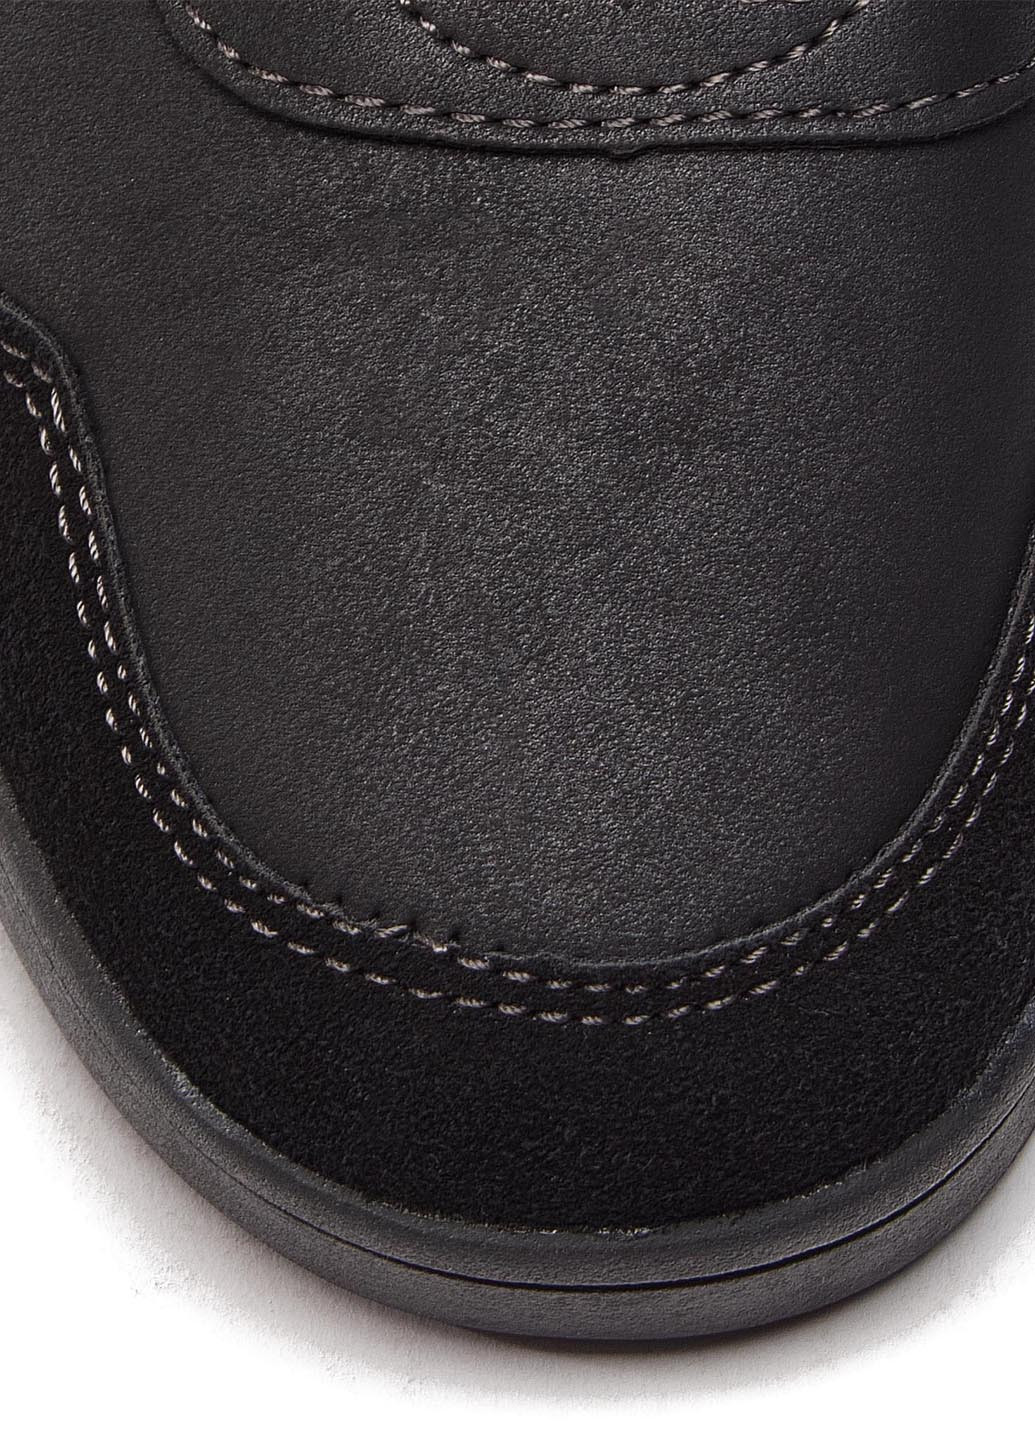 Зимние черевики sprandi earth gear wp07-171034-01 хайкеры SPRANDI EARTH GEAR без декора из искусственной кожи, тканевые